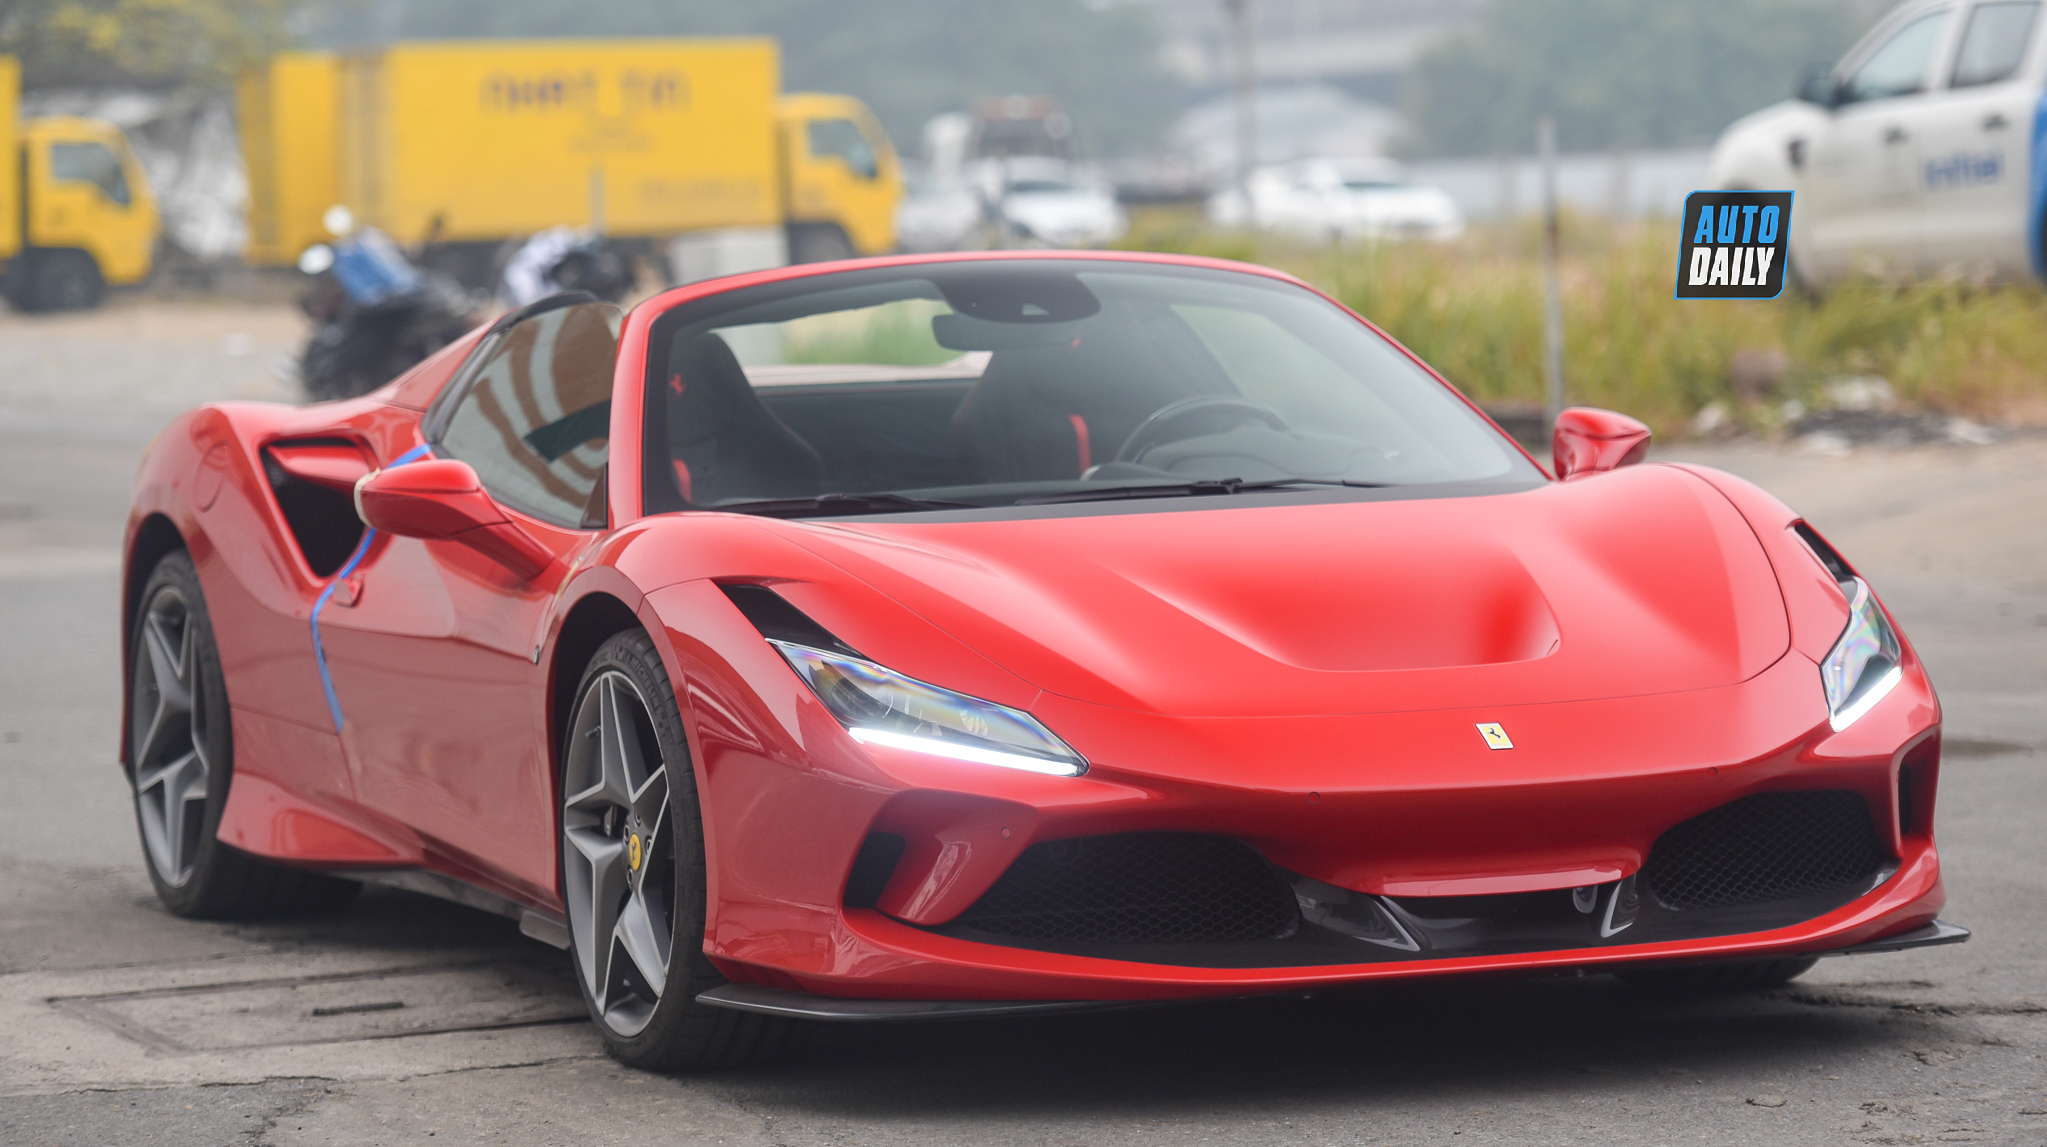 Chi tiết siêu xe Ferrari F8 Spider giá hơn 1 triệu USD tại Việt Nam 58.jpg